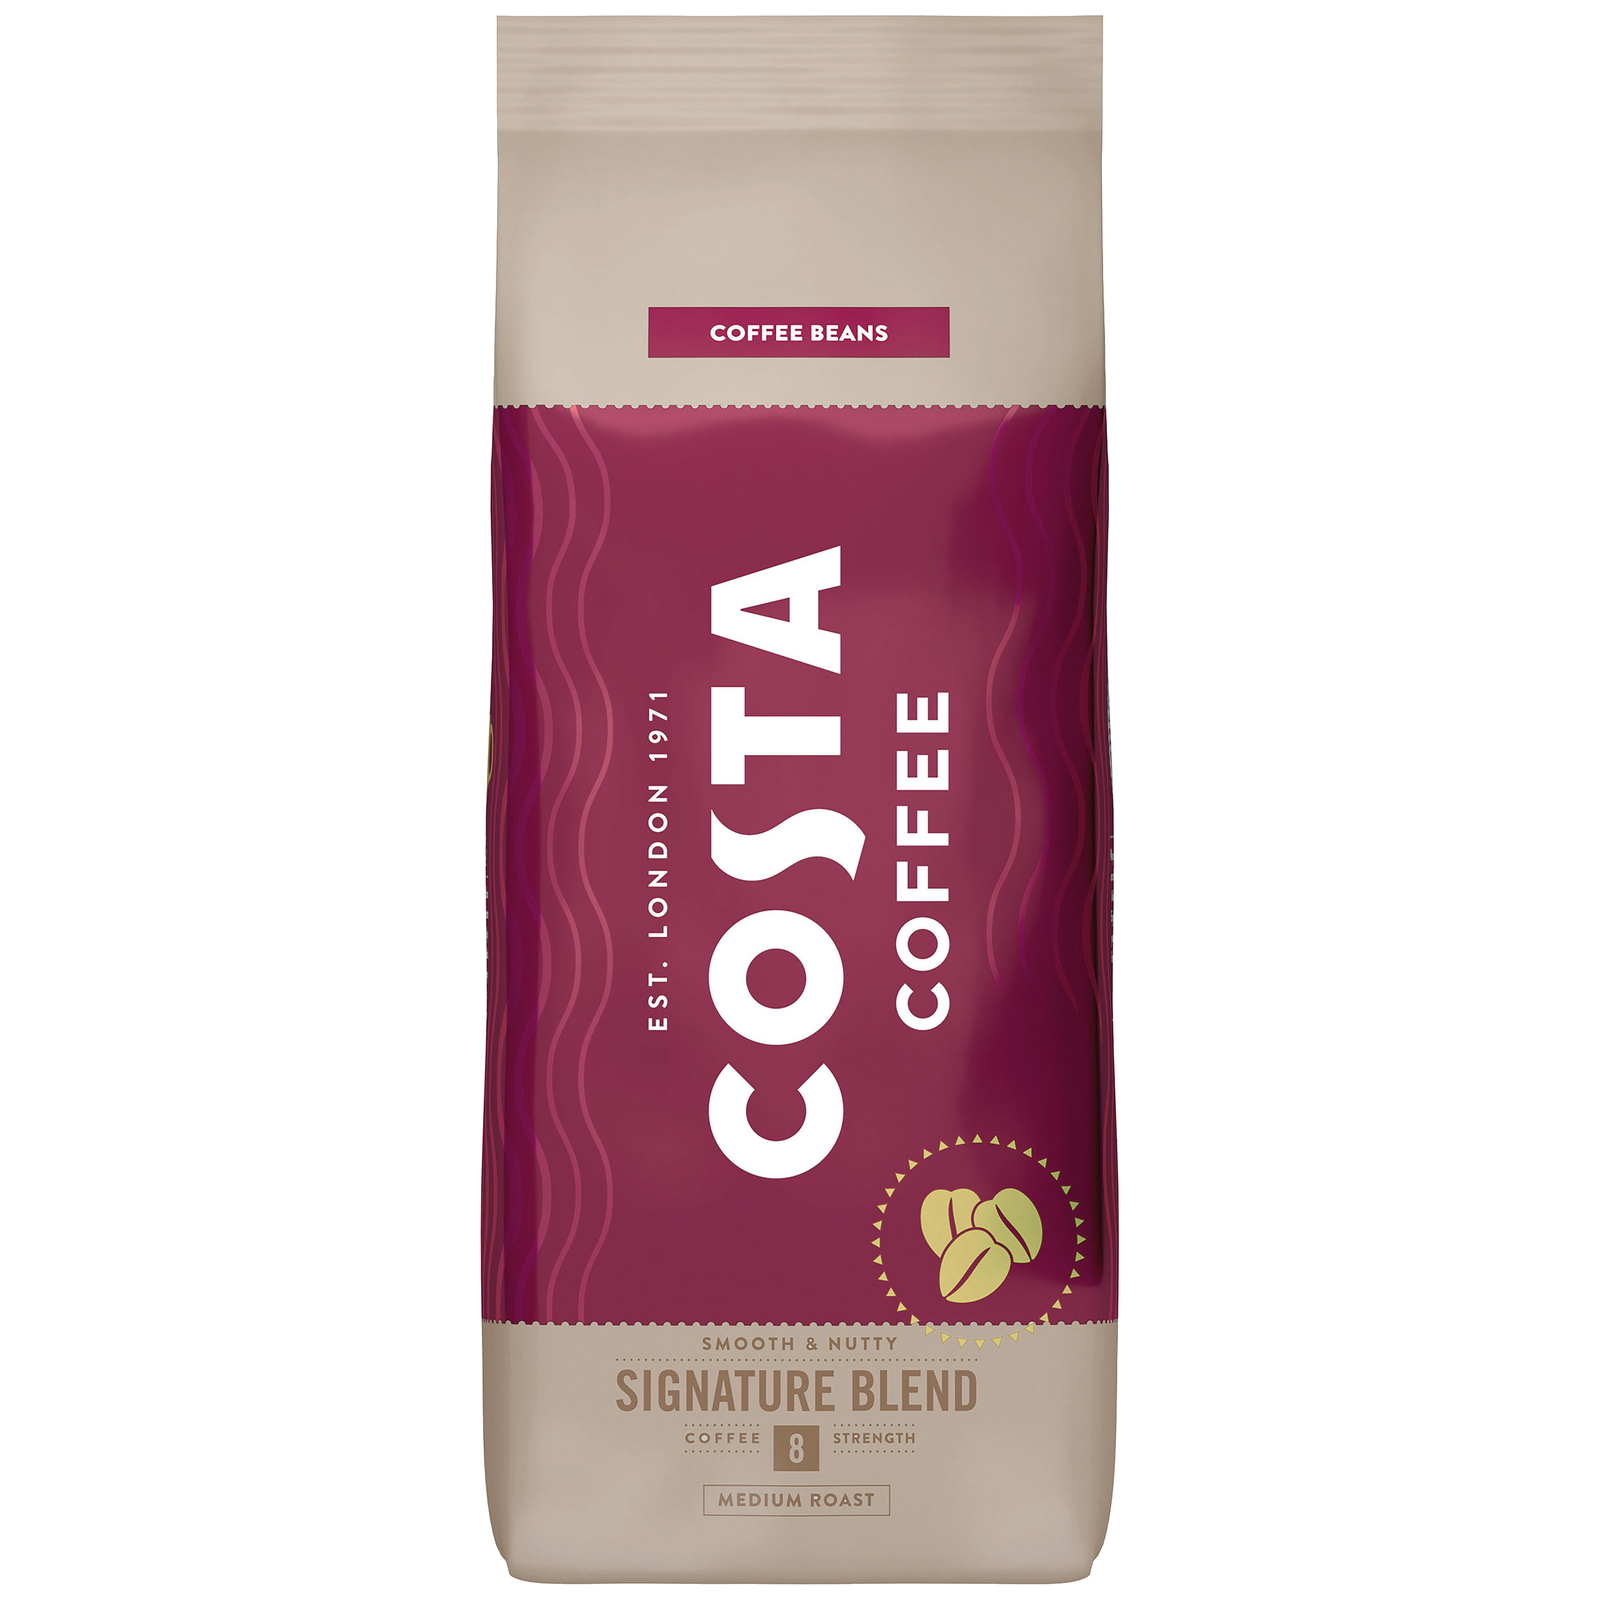 ZESTAW - Kawa ziarnista Costa Coffee Signature Blend 2x1kg